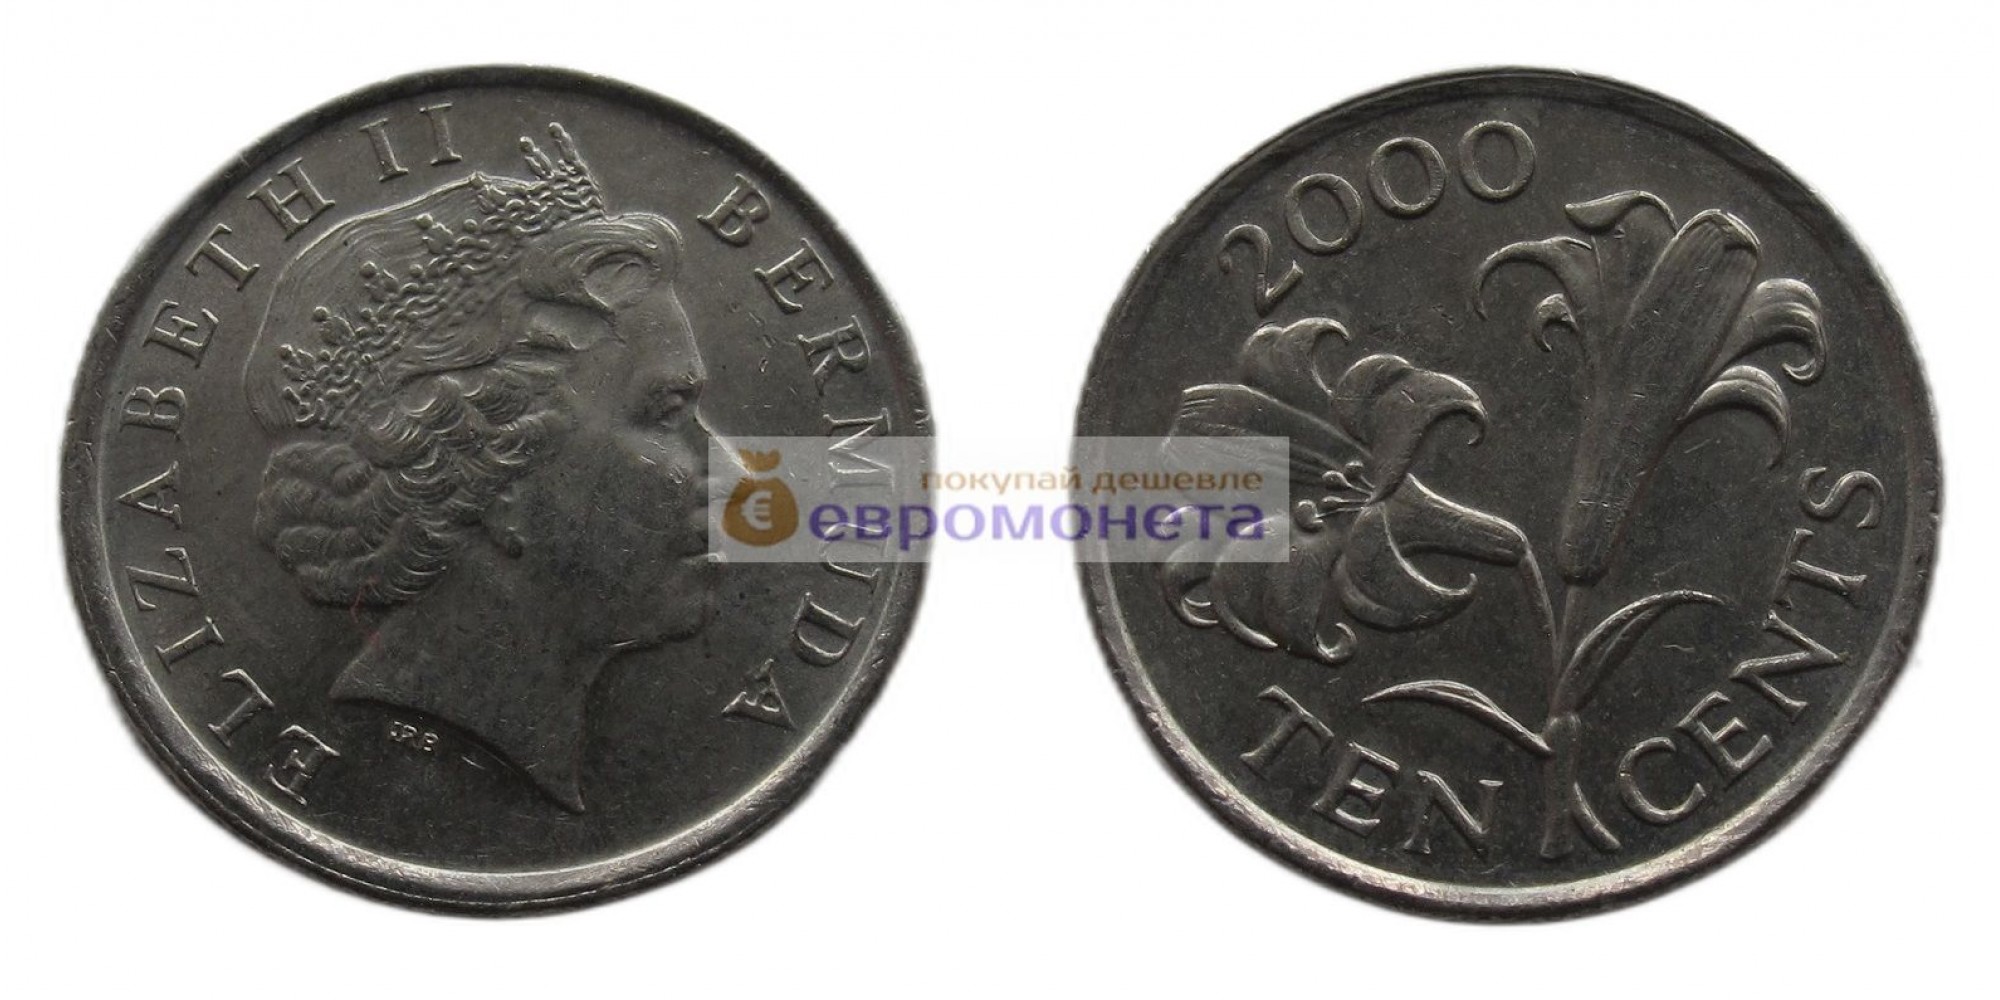 Бермудские острова (Бермуды) 10 центов 2000 год. Королева Елизавета II